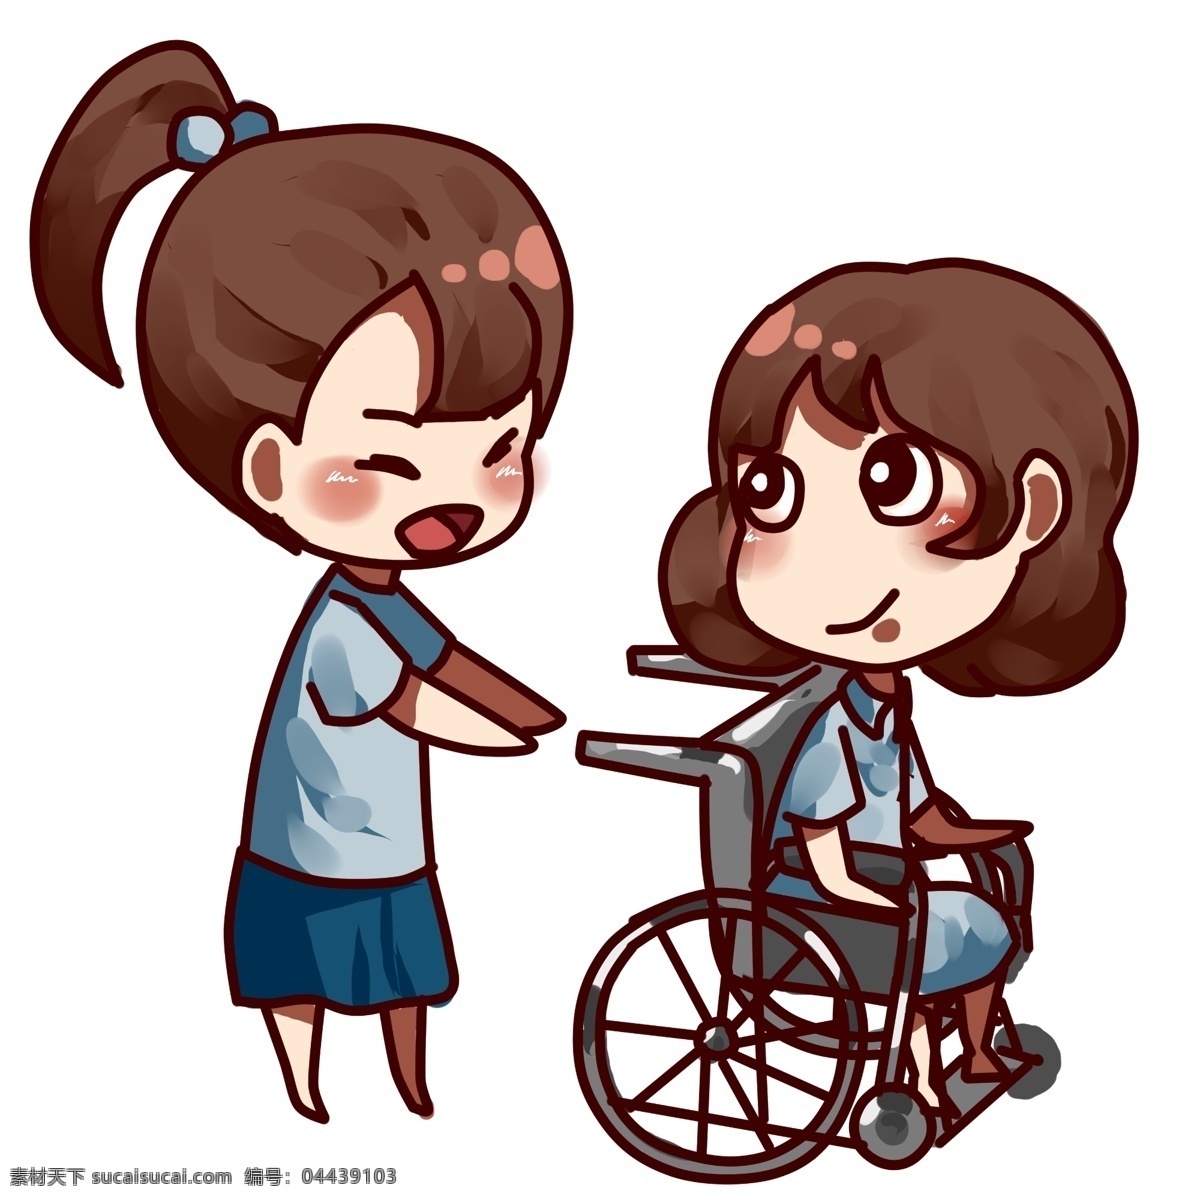 助残日 帮助 残疾人 受伤 人群 帮助残疾人 帮助受伤人群 乐于助人 帮忙 双人 轮椅 生病 女生热心帮忙